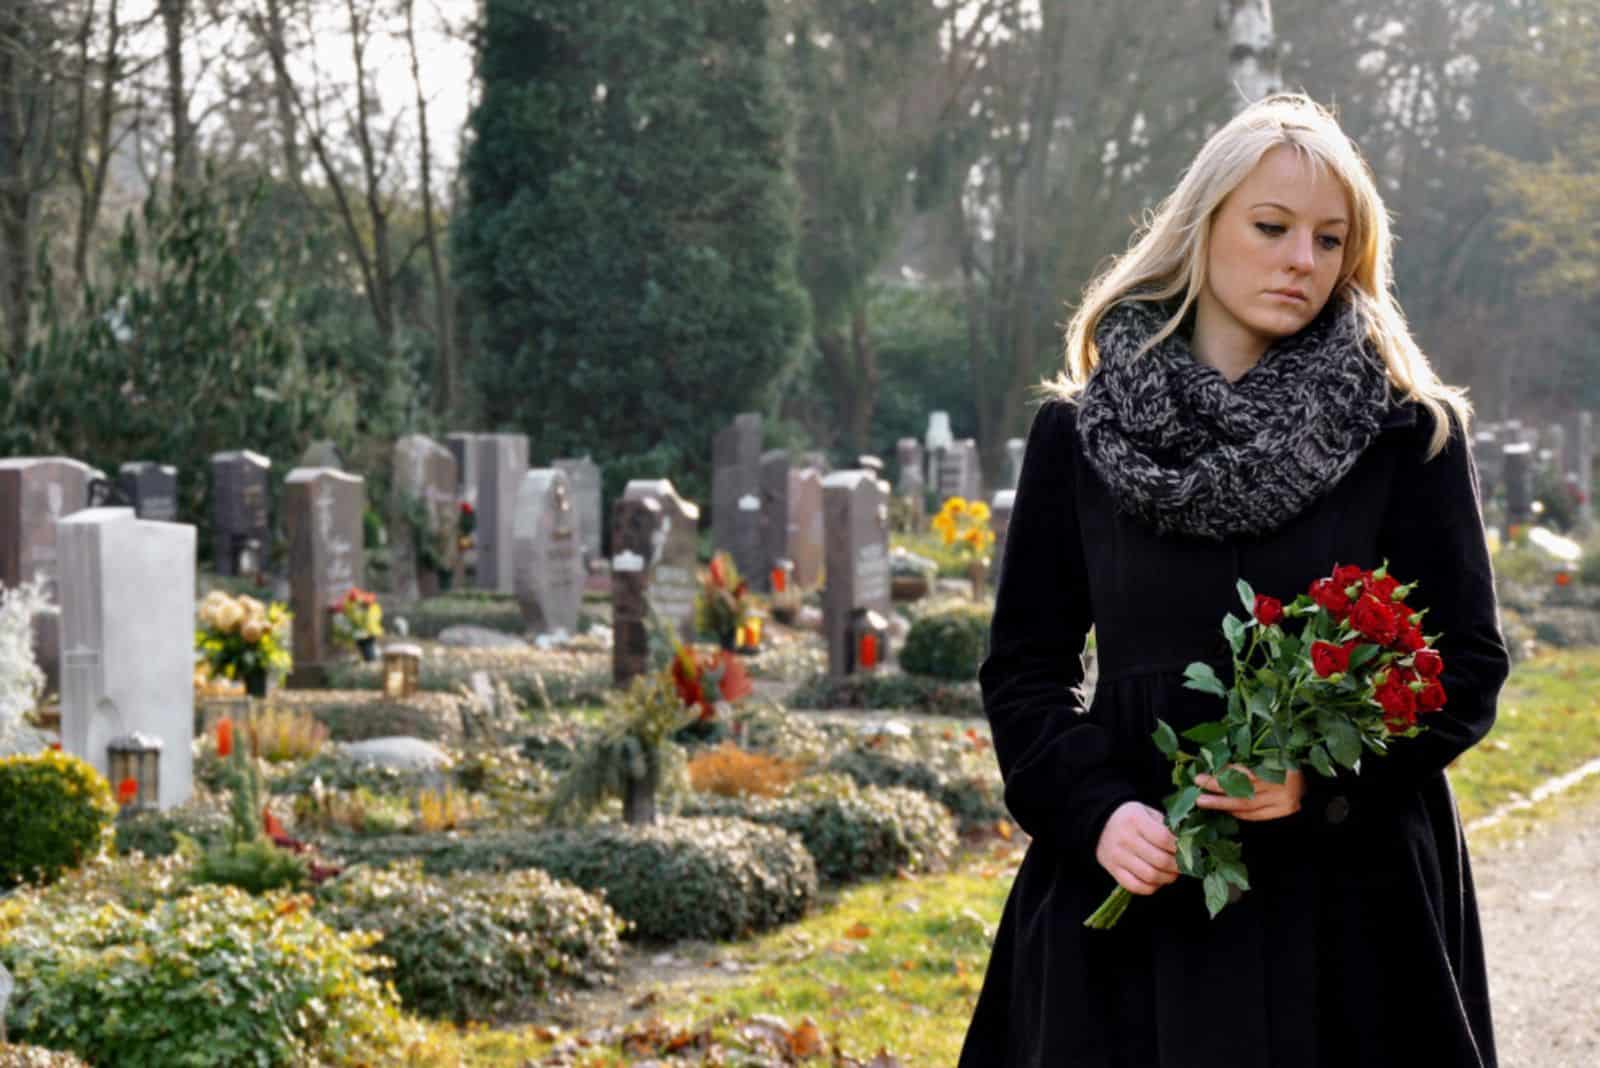 Femme au cimetière avec un bouquet de roses